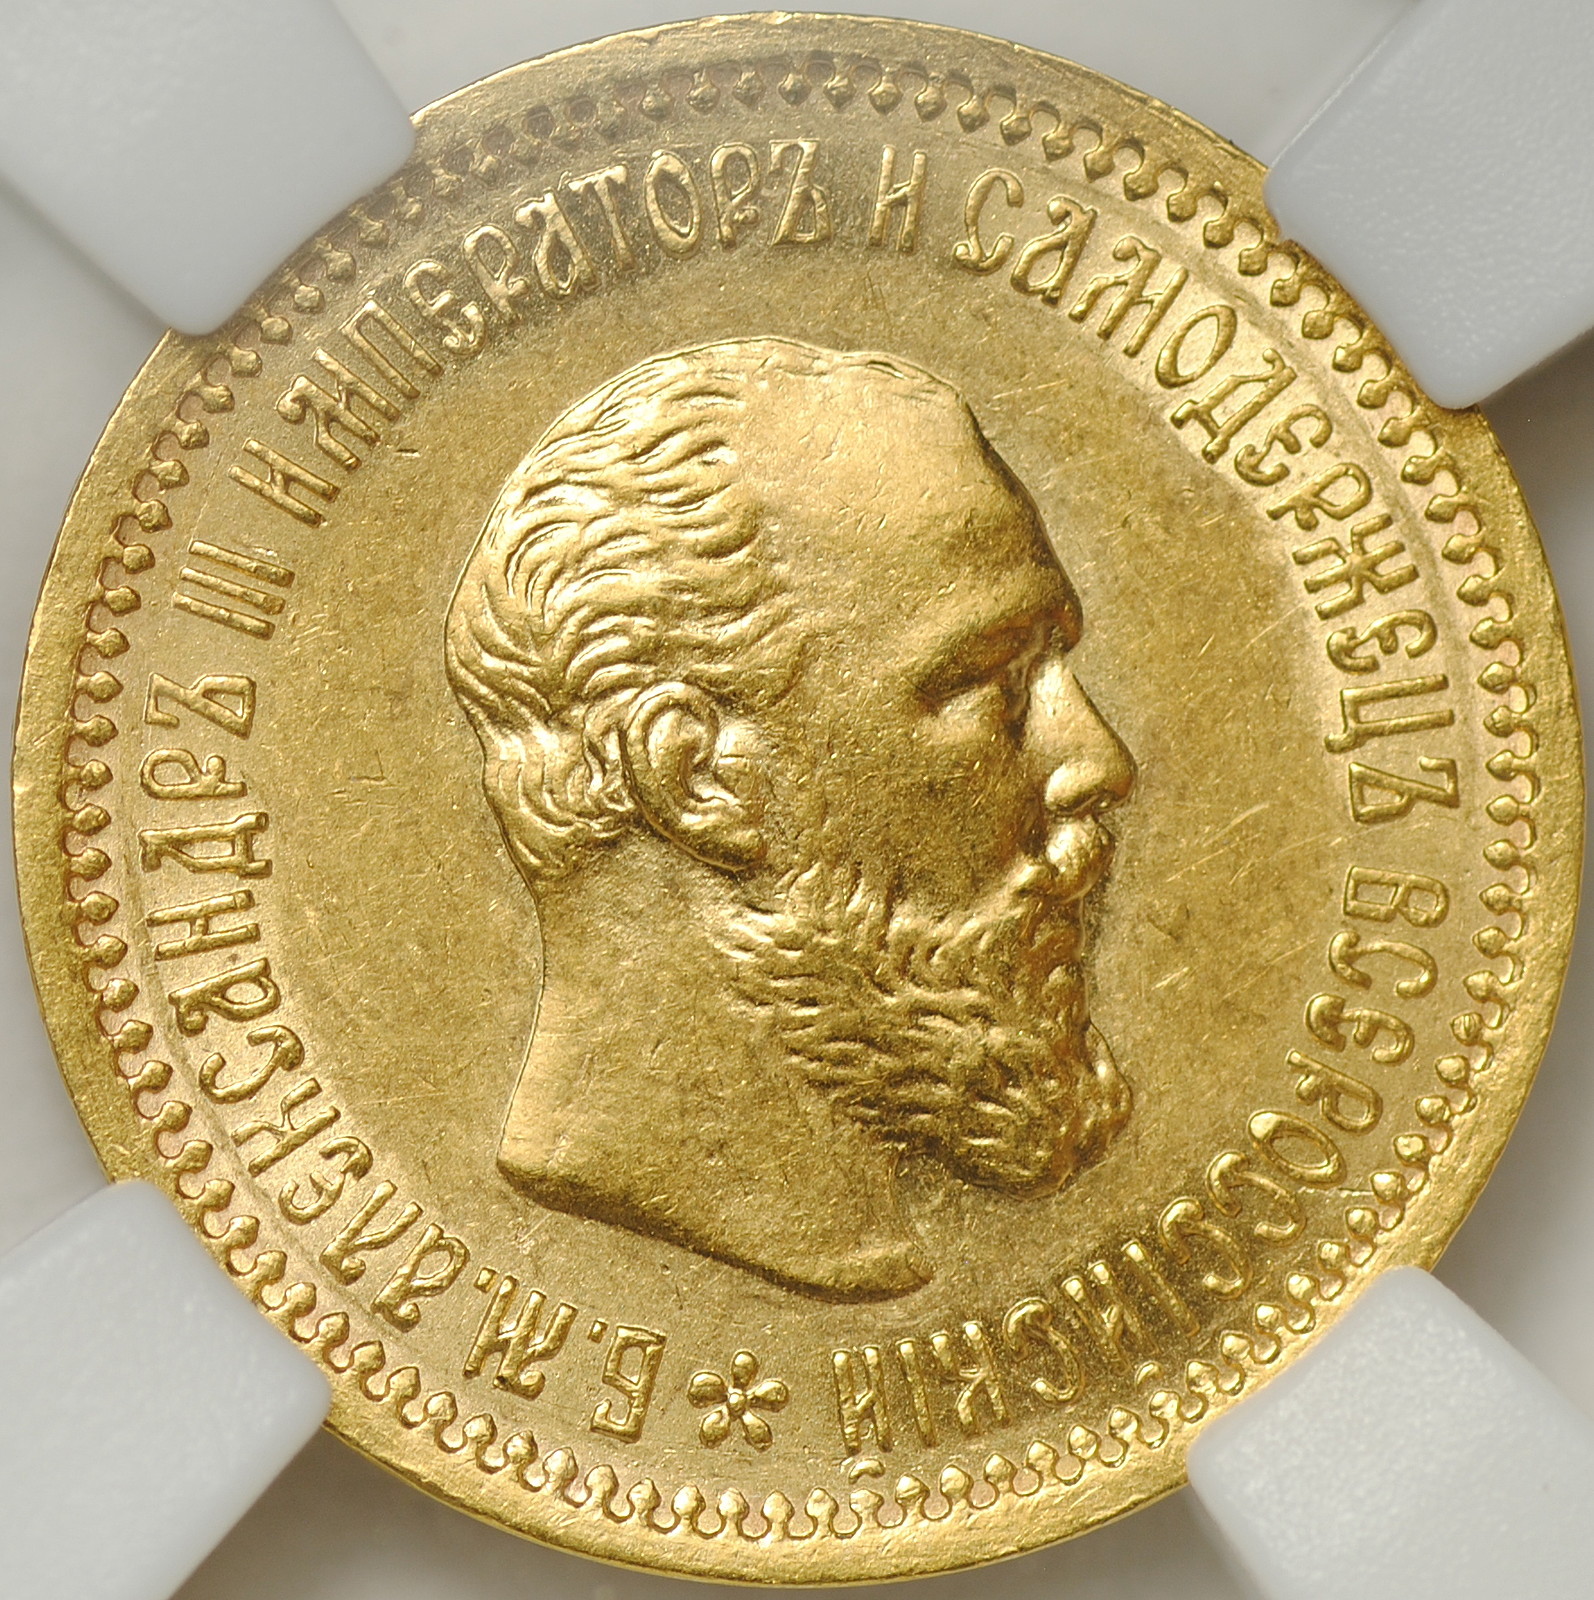 Рубль 1889. Полуимпериал - пять рублей золотом 1895 года.